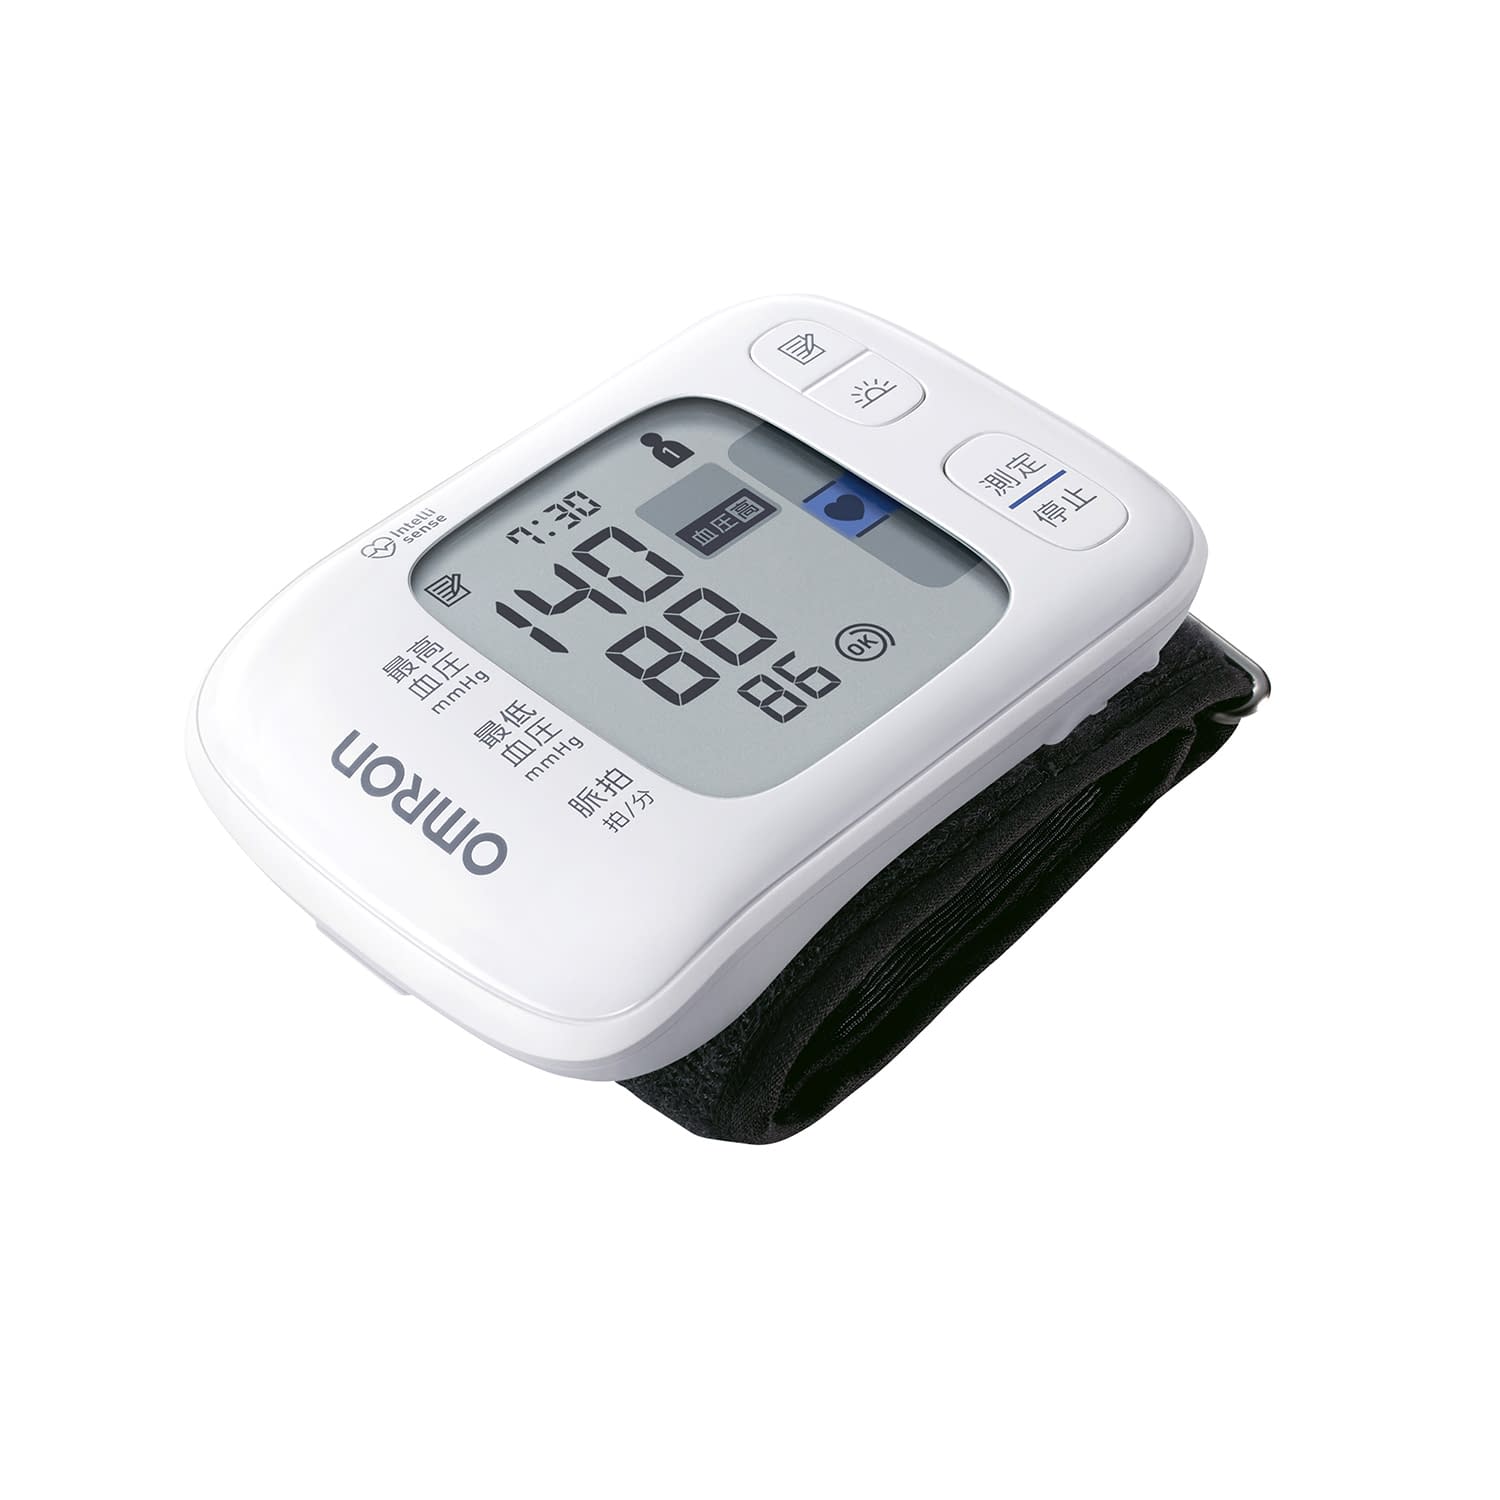 (24-7242-00)オムロン手首式血圧計HEM-6230 ｵﾑﾛﾝﾃｸﾋﾞｼｷｹﾂｱﾂｹｲ(オムロンヘルスケア)【1台単位】【2019年カタログ商品】